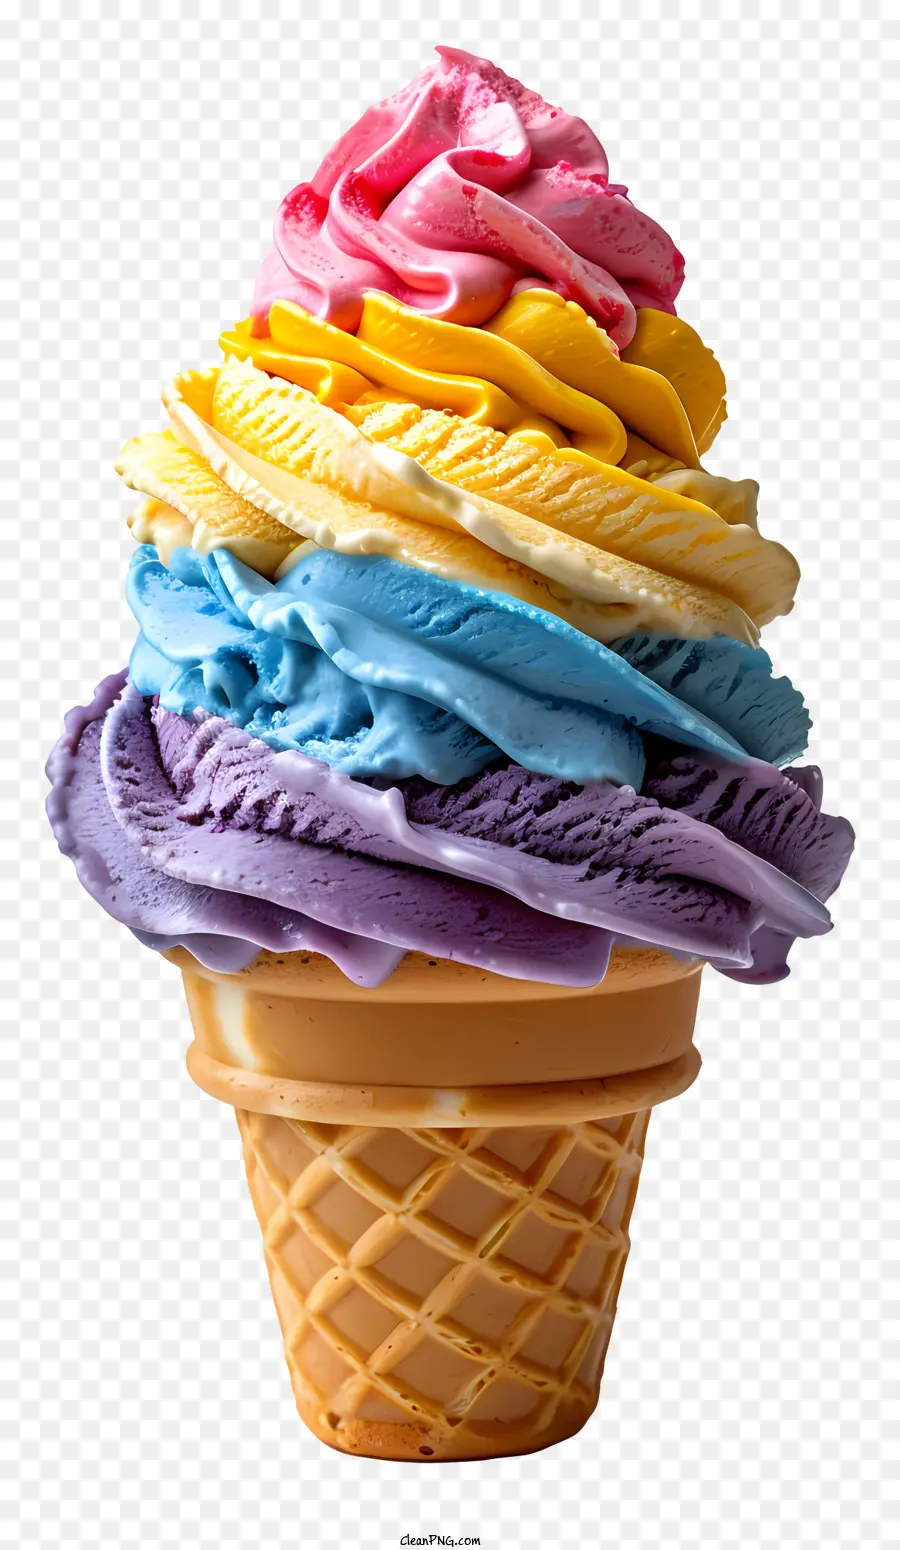 rainbow ice cream cone rainbow ice cream swirled flavors ice cream cone colorful ice cream